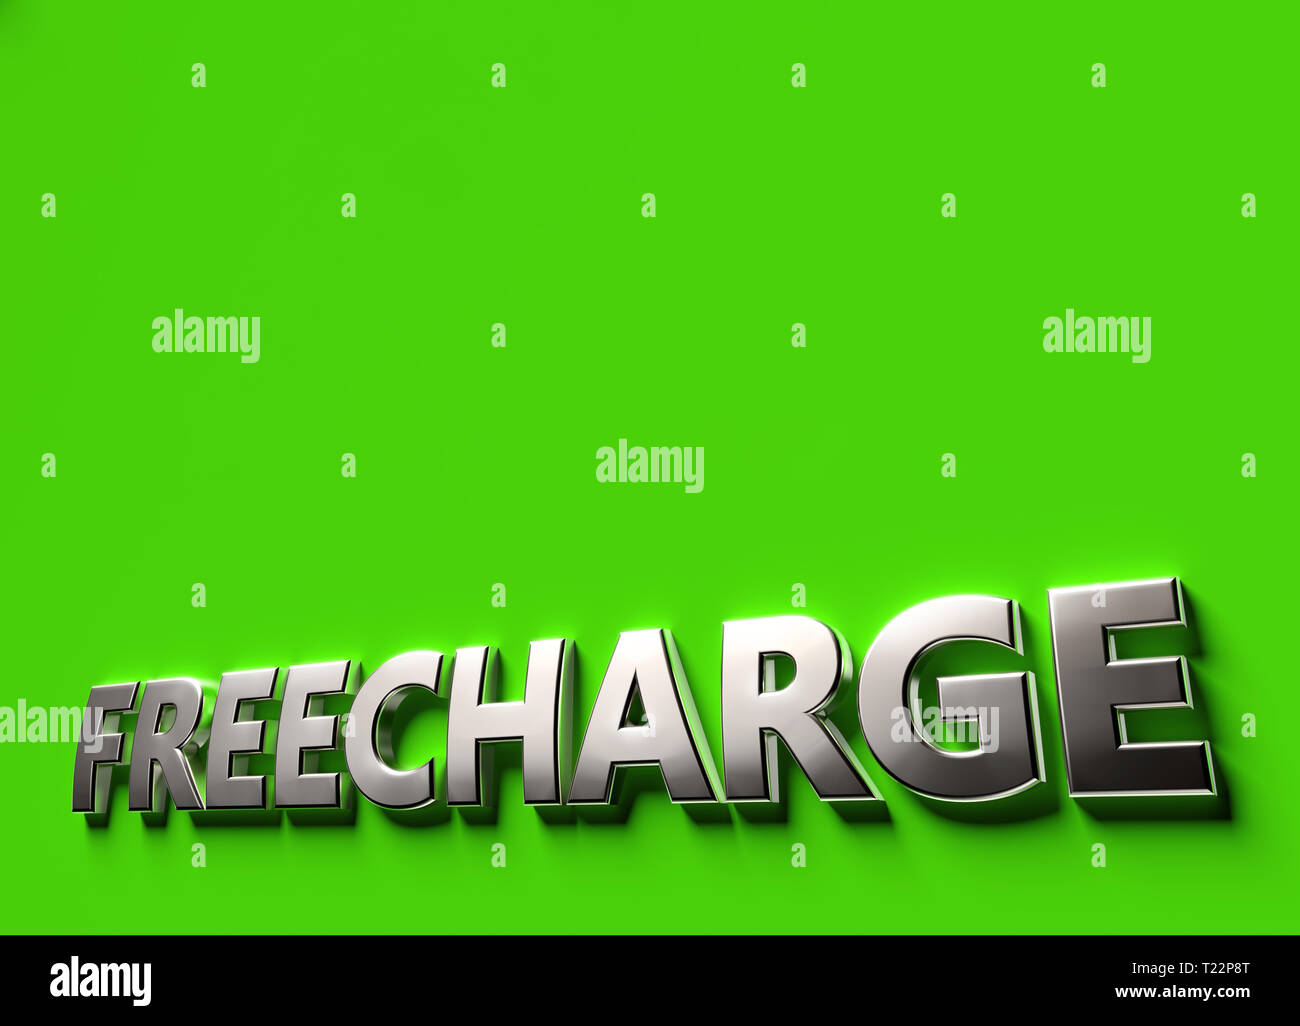 Kostenlos Word als 3-D-SIGN oder Logo Konzept auf grünem Untergrund mit Kopie Raum darüber. Freecharge Technologien Konzept. 3D-Rendering Stockfoto